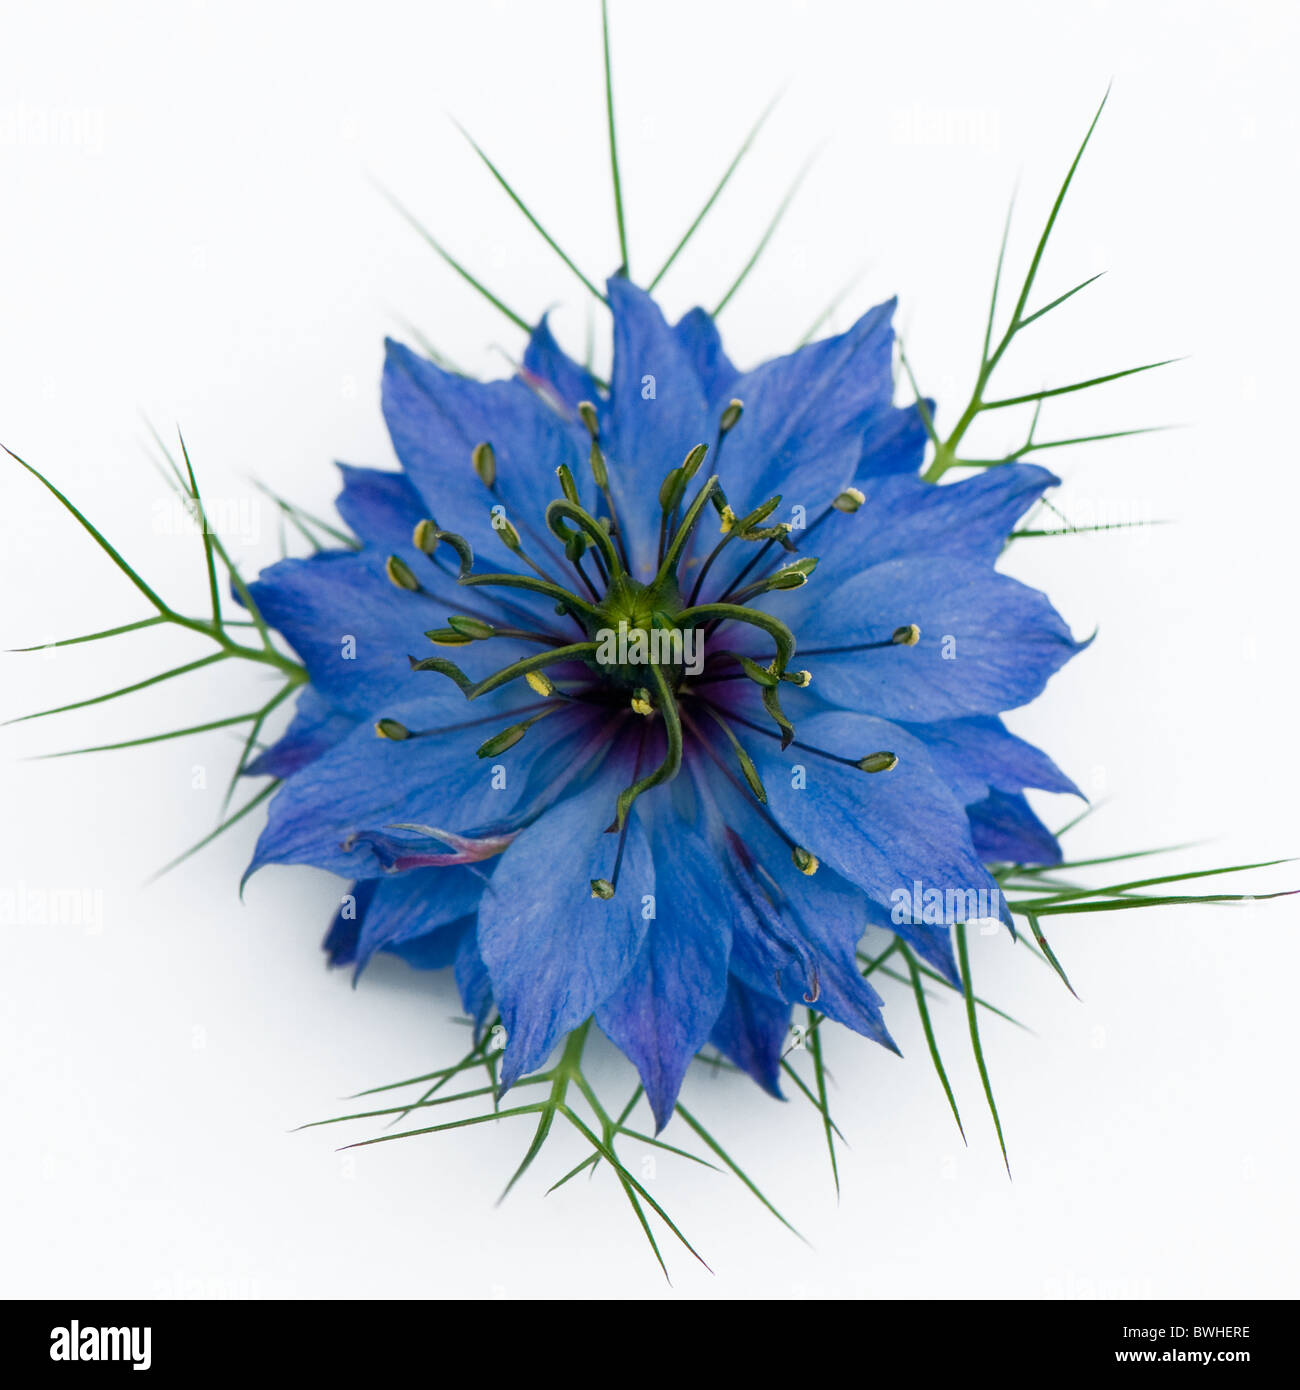 Eine einzelne blaue Blume Nigella Damascena - Liebe-in-the-Nebel vor einem weißen Hintergrund Stockfoto